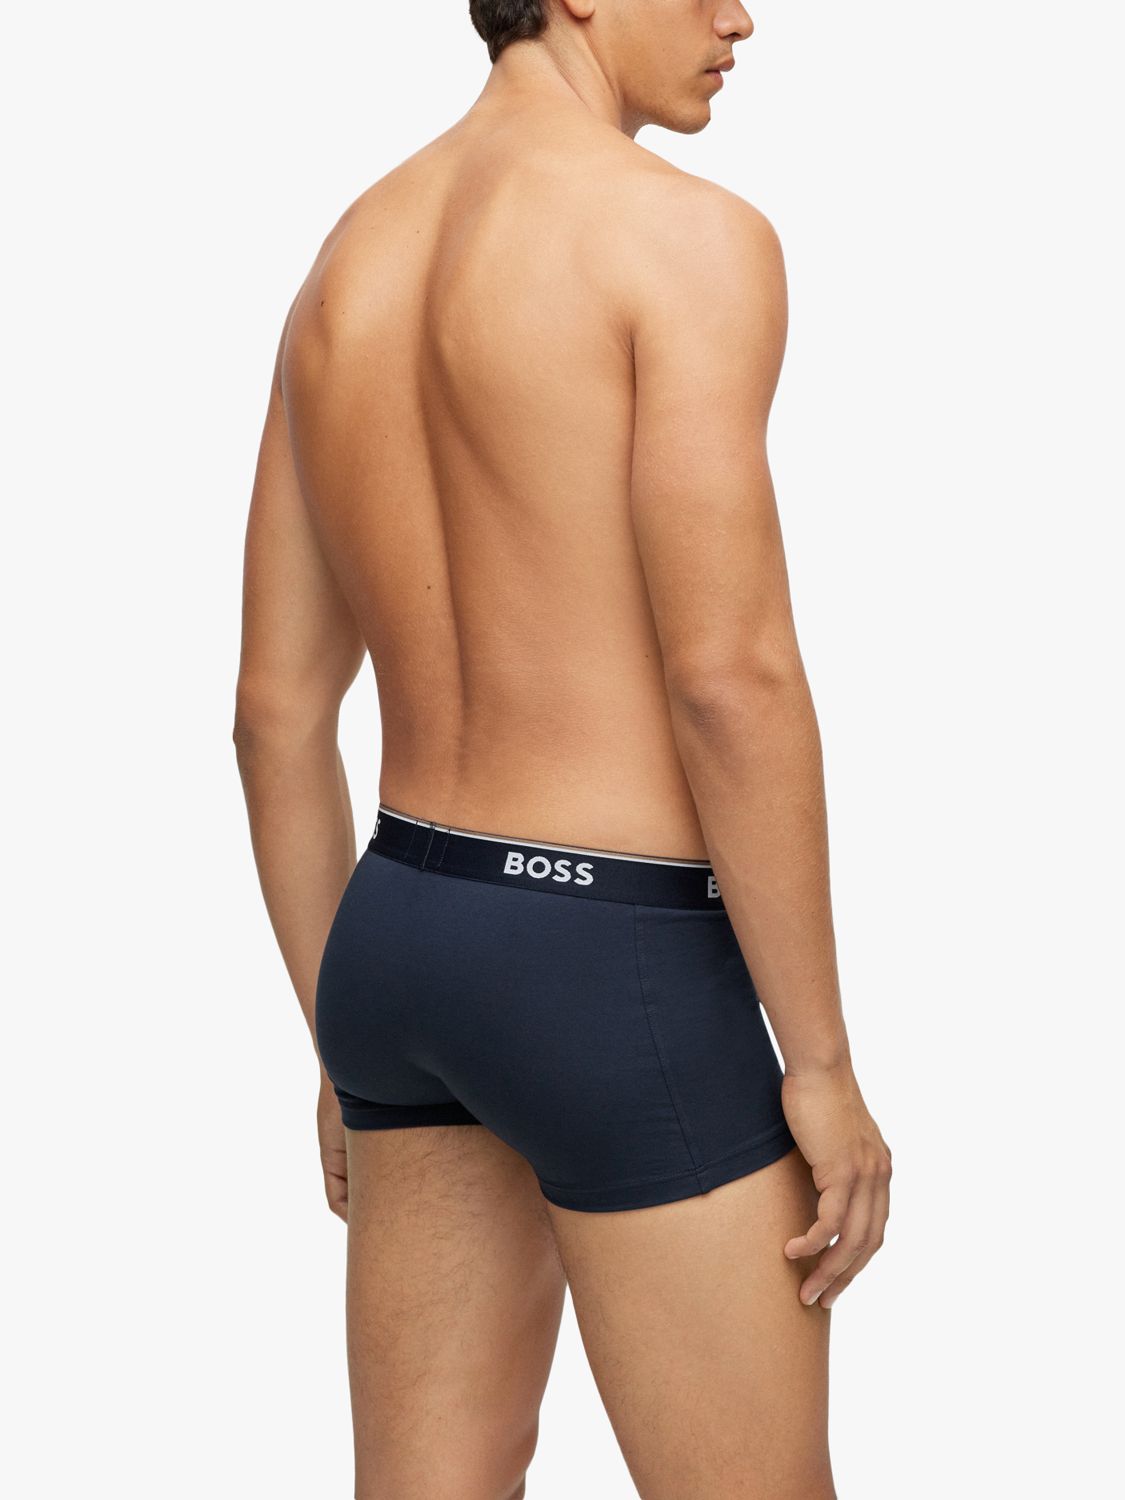 BOSS Power Cotton Logo Waistband Trunks, Pack of 3, Open Blue, S